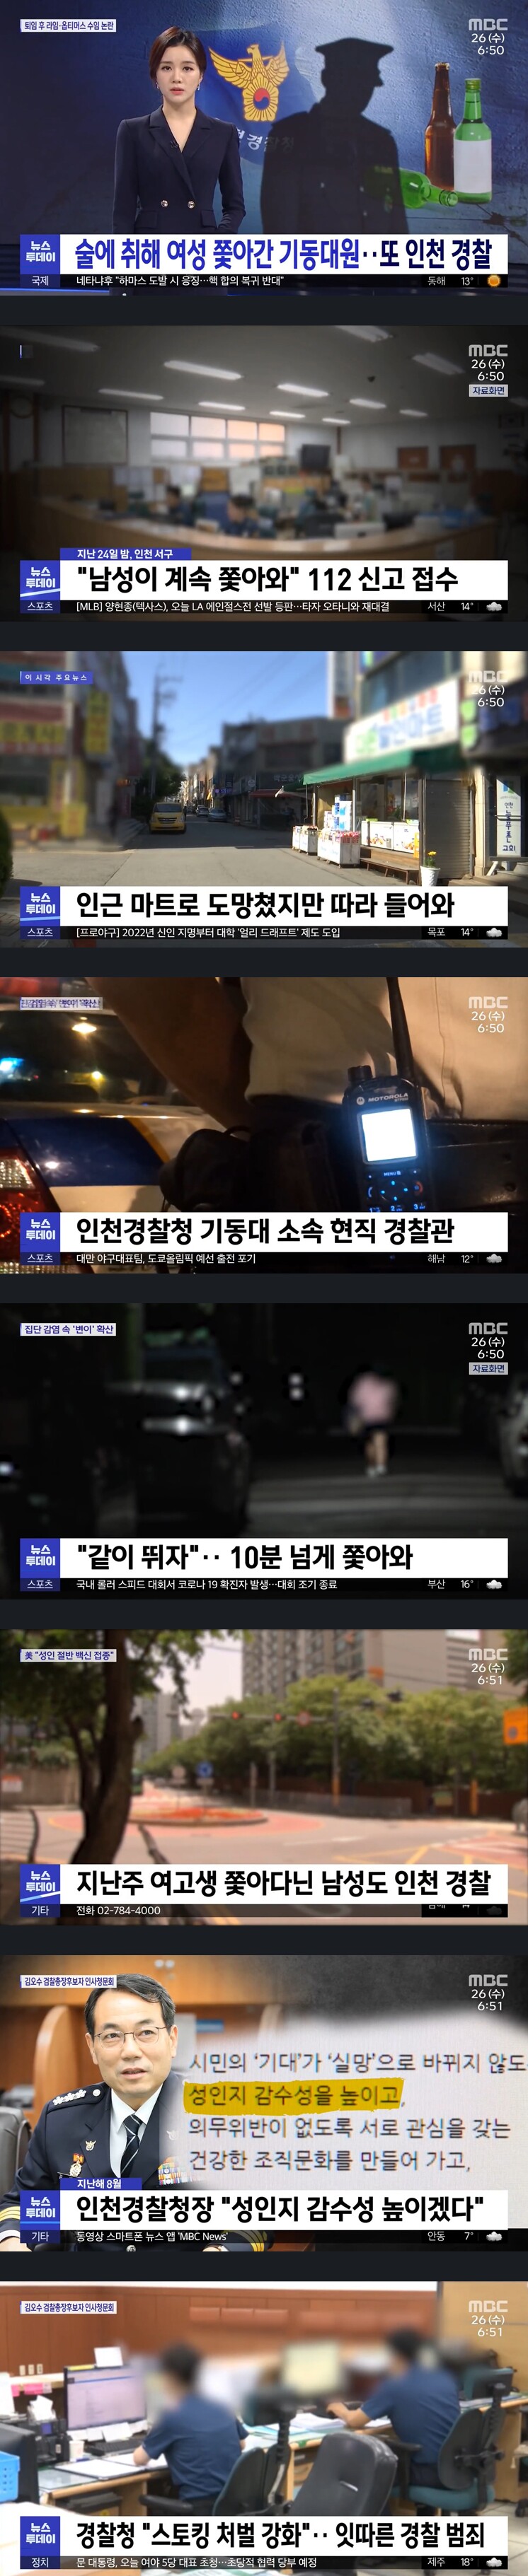 여성 스토킹 경찰 또 인천